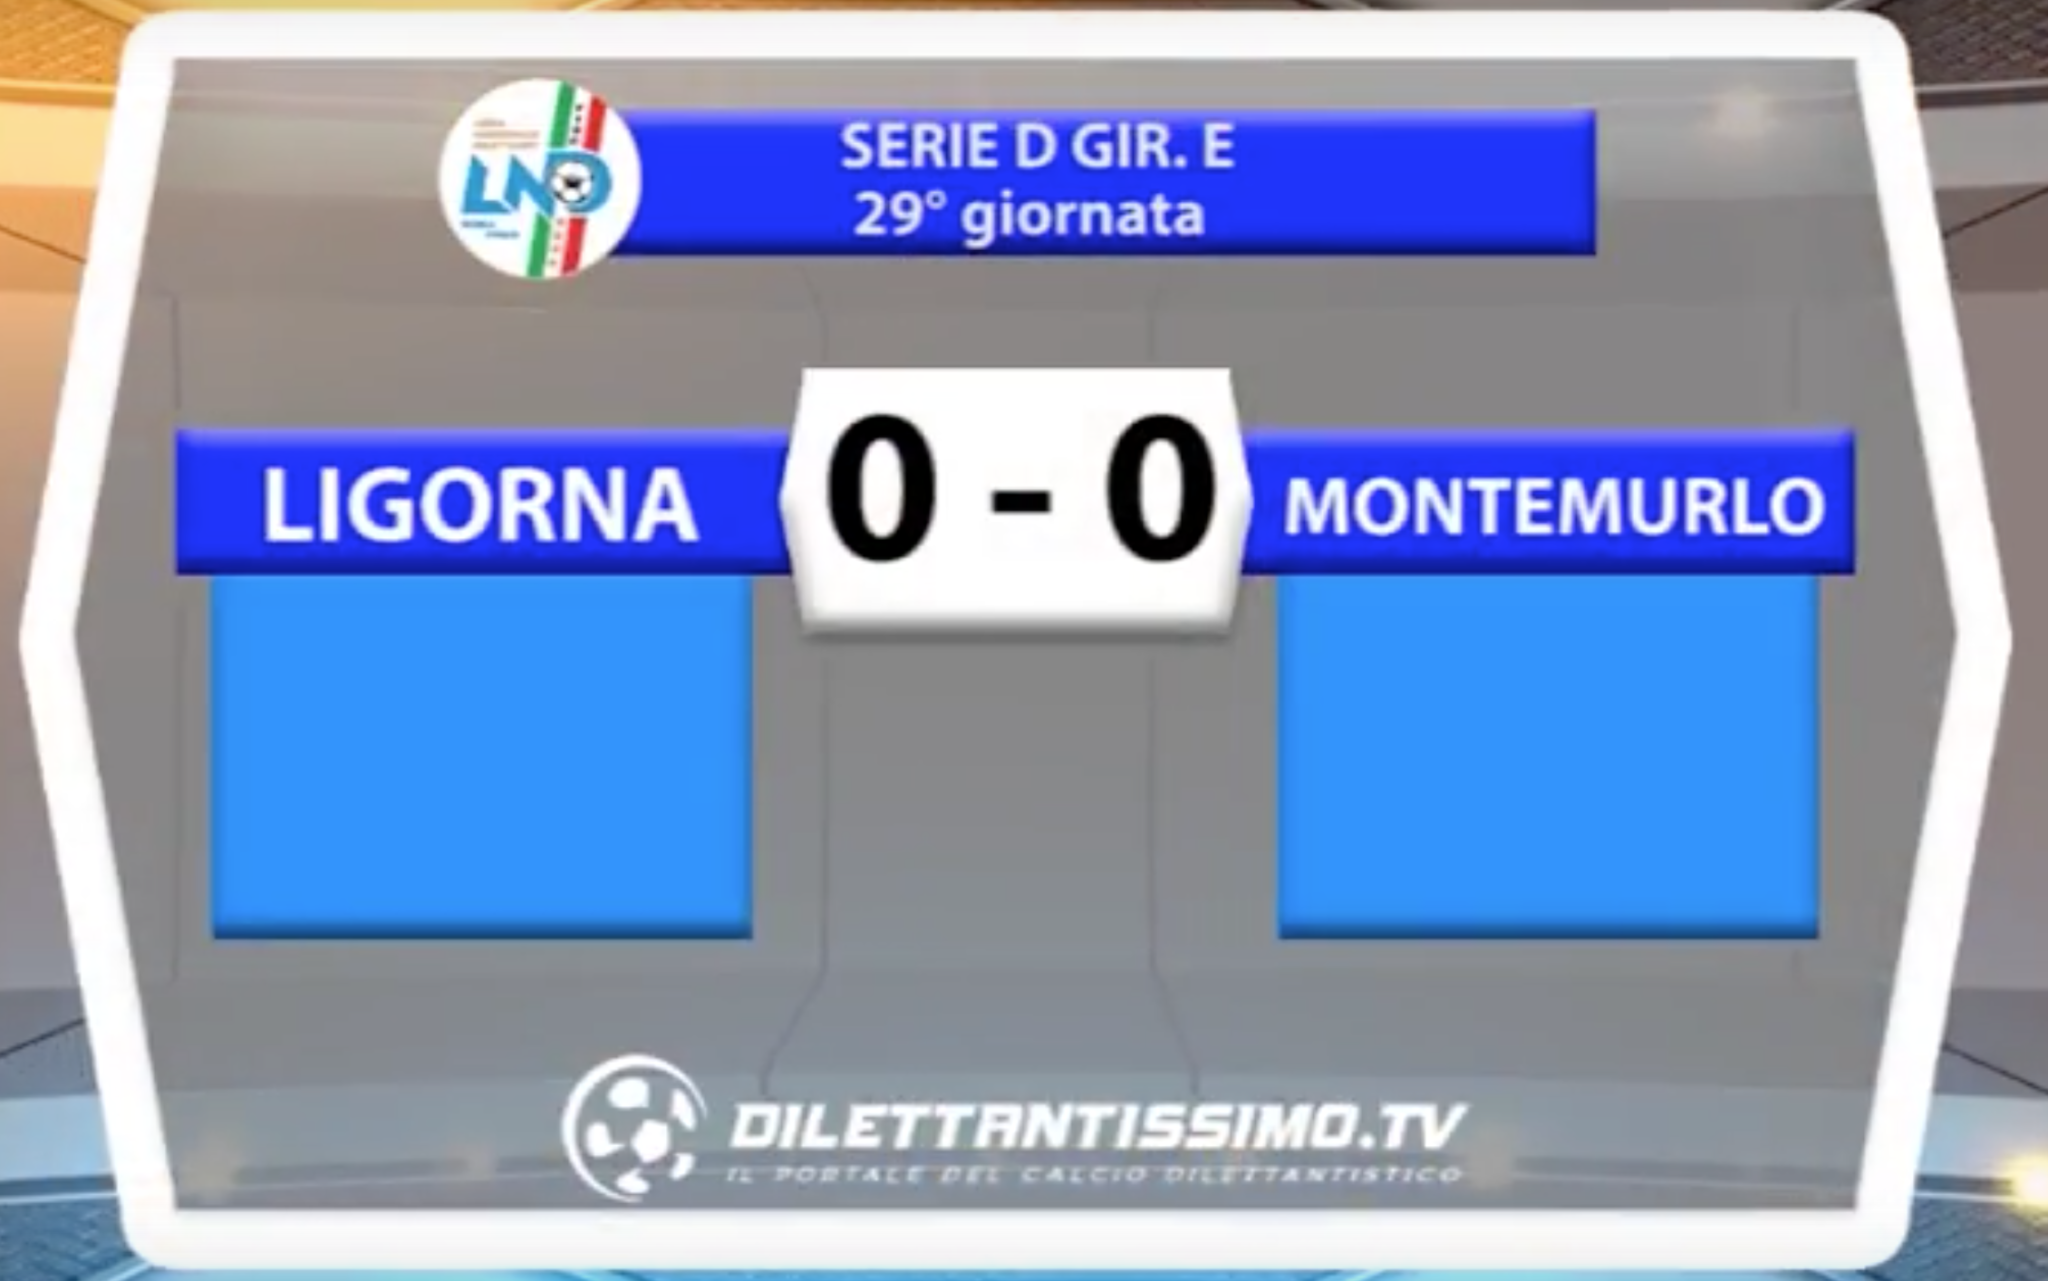 LIGORNA – JOLLY MONTEMURLO 0-0 | SERIE D GIR. E